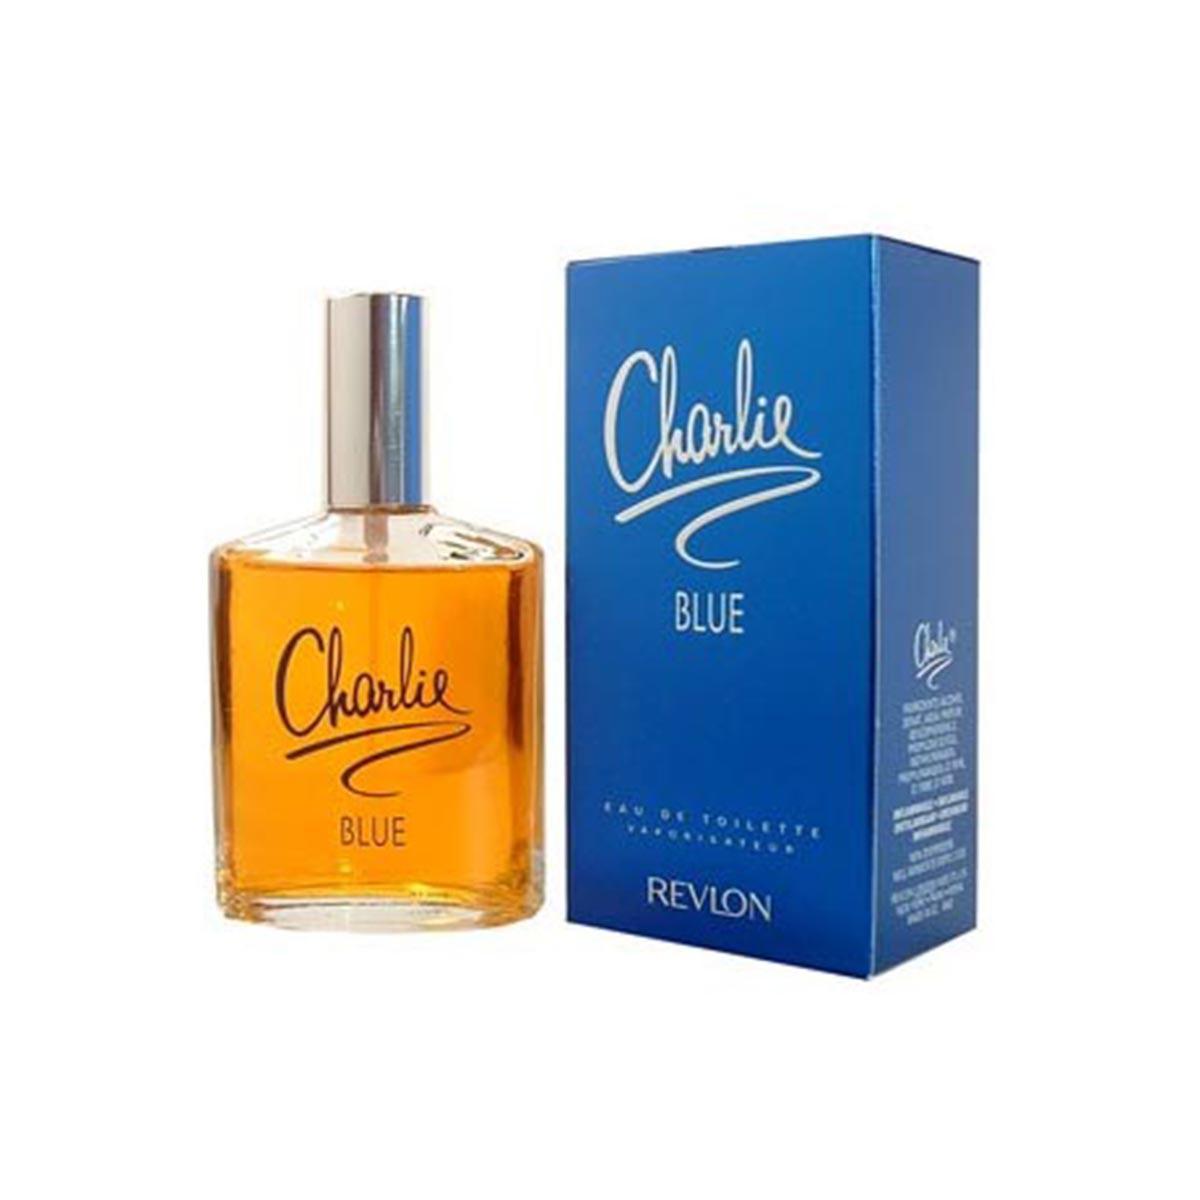 charlie-blue-revlon-eau-de-toilette-100ml-perfume